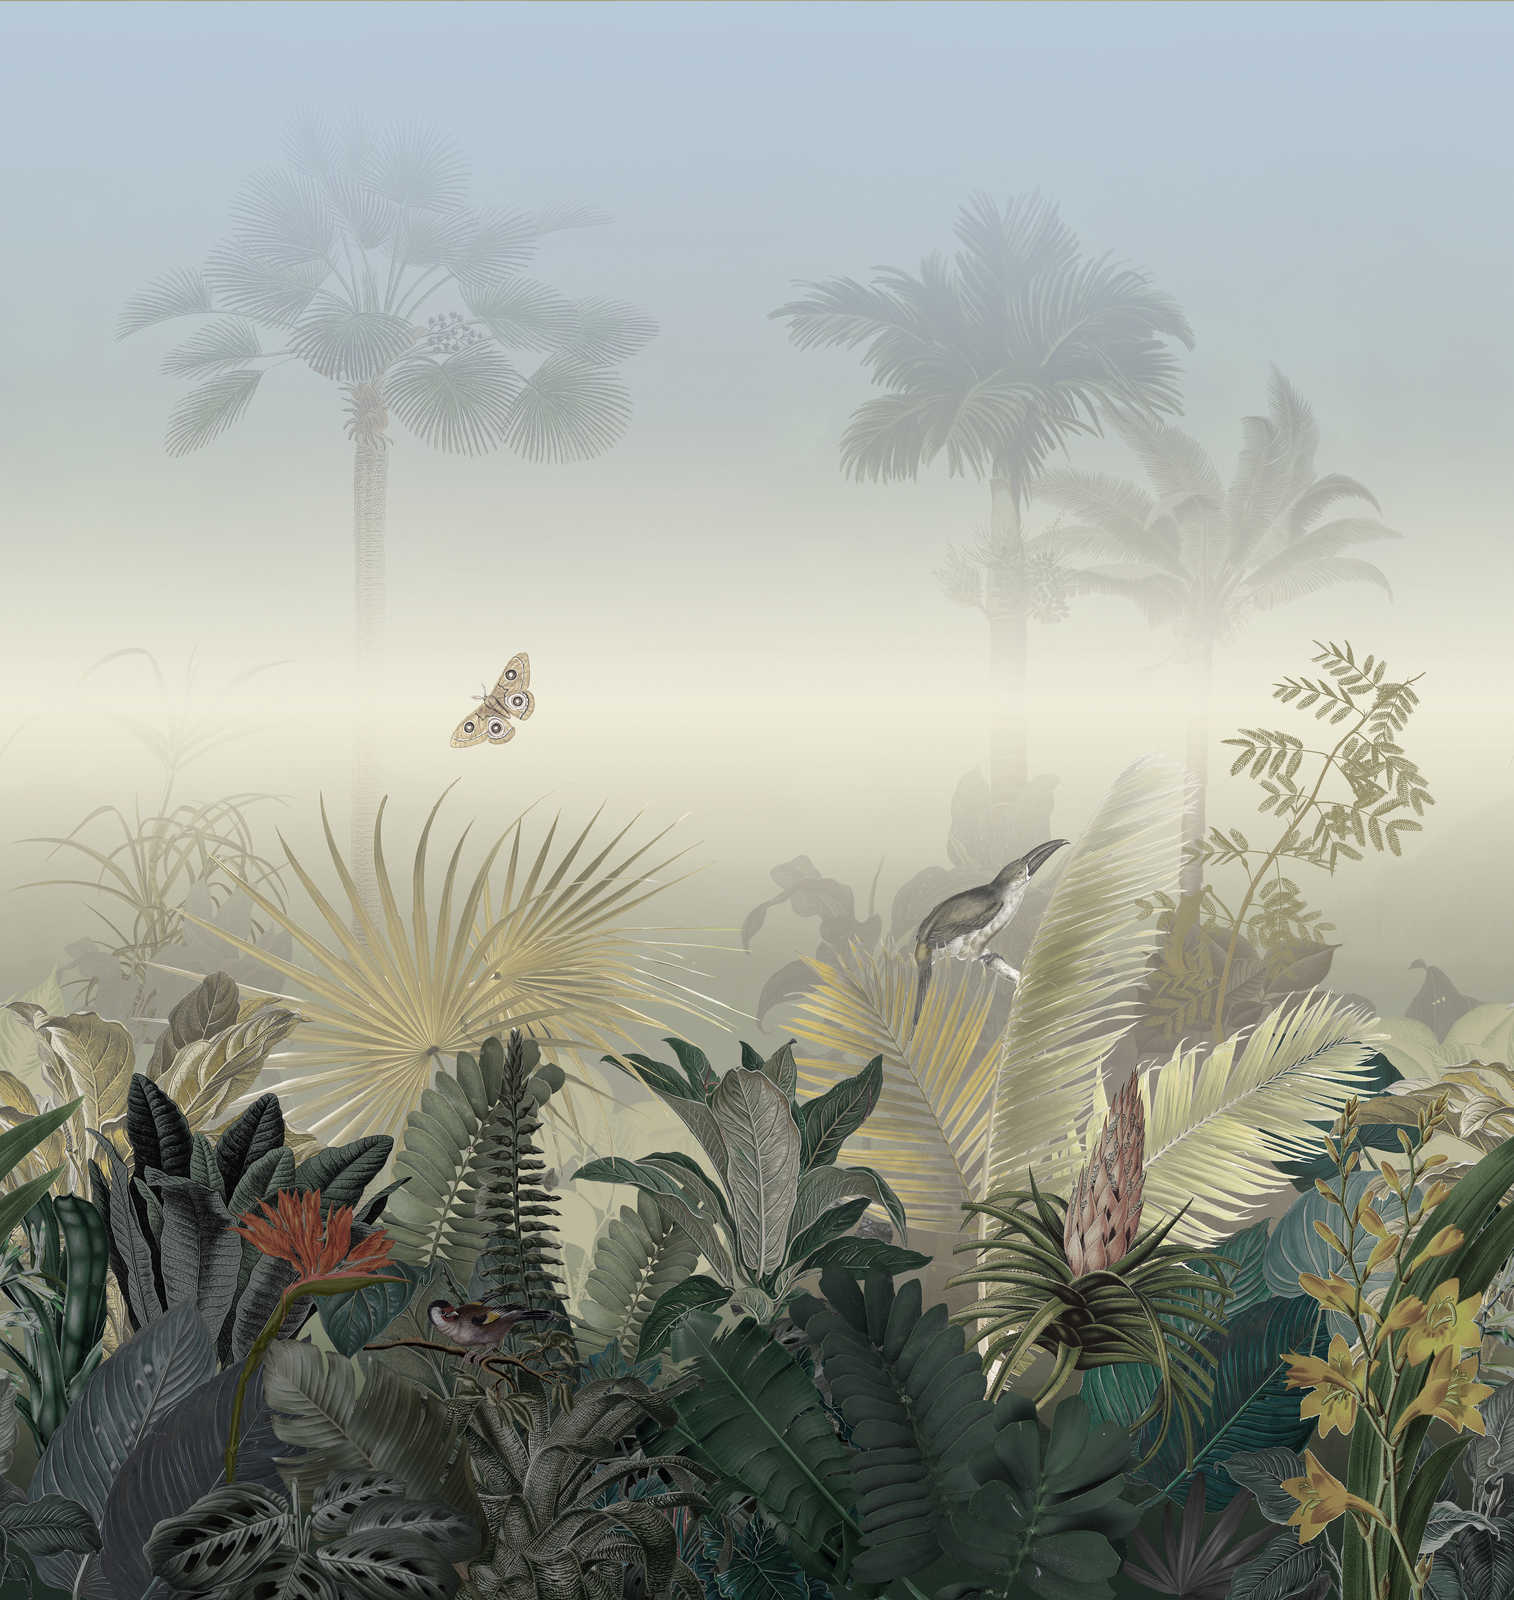             Dschungelmotiv Tapete mit Tieren bei Nebel – Bunt, Blau, Grün
        